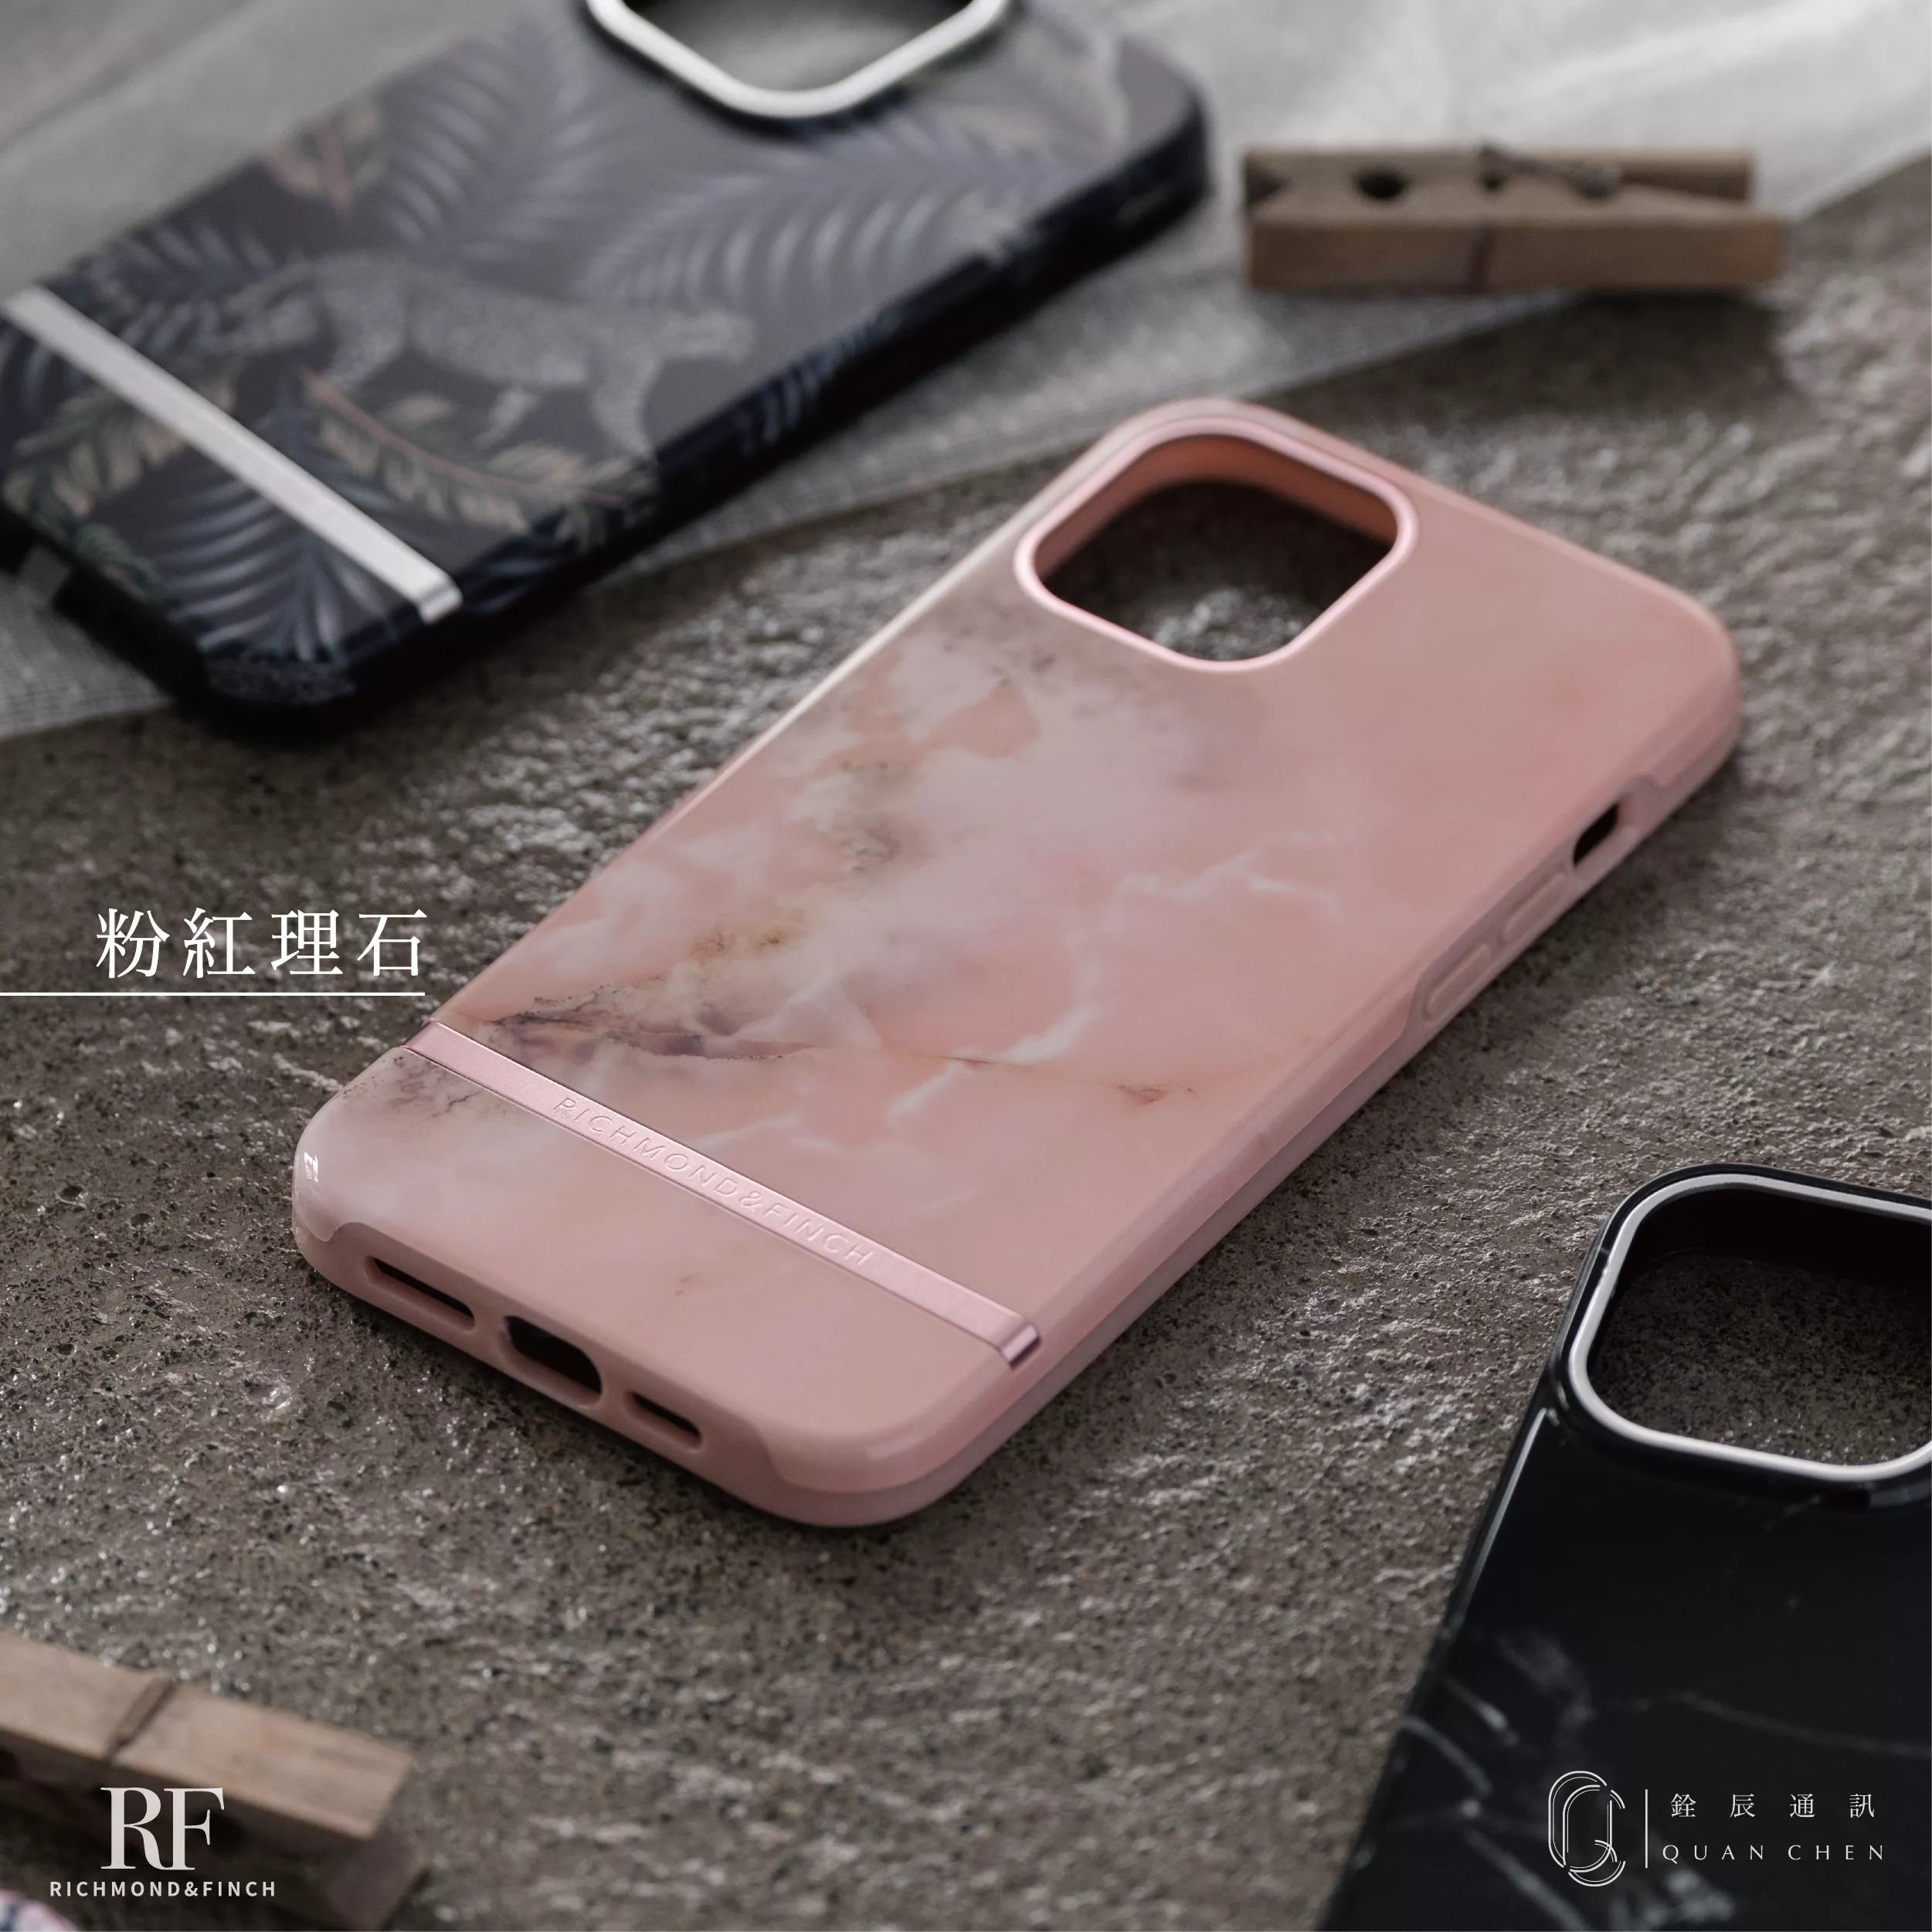 R&F瑞典時尚手機殼-粉紅理石